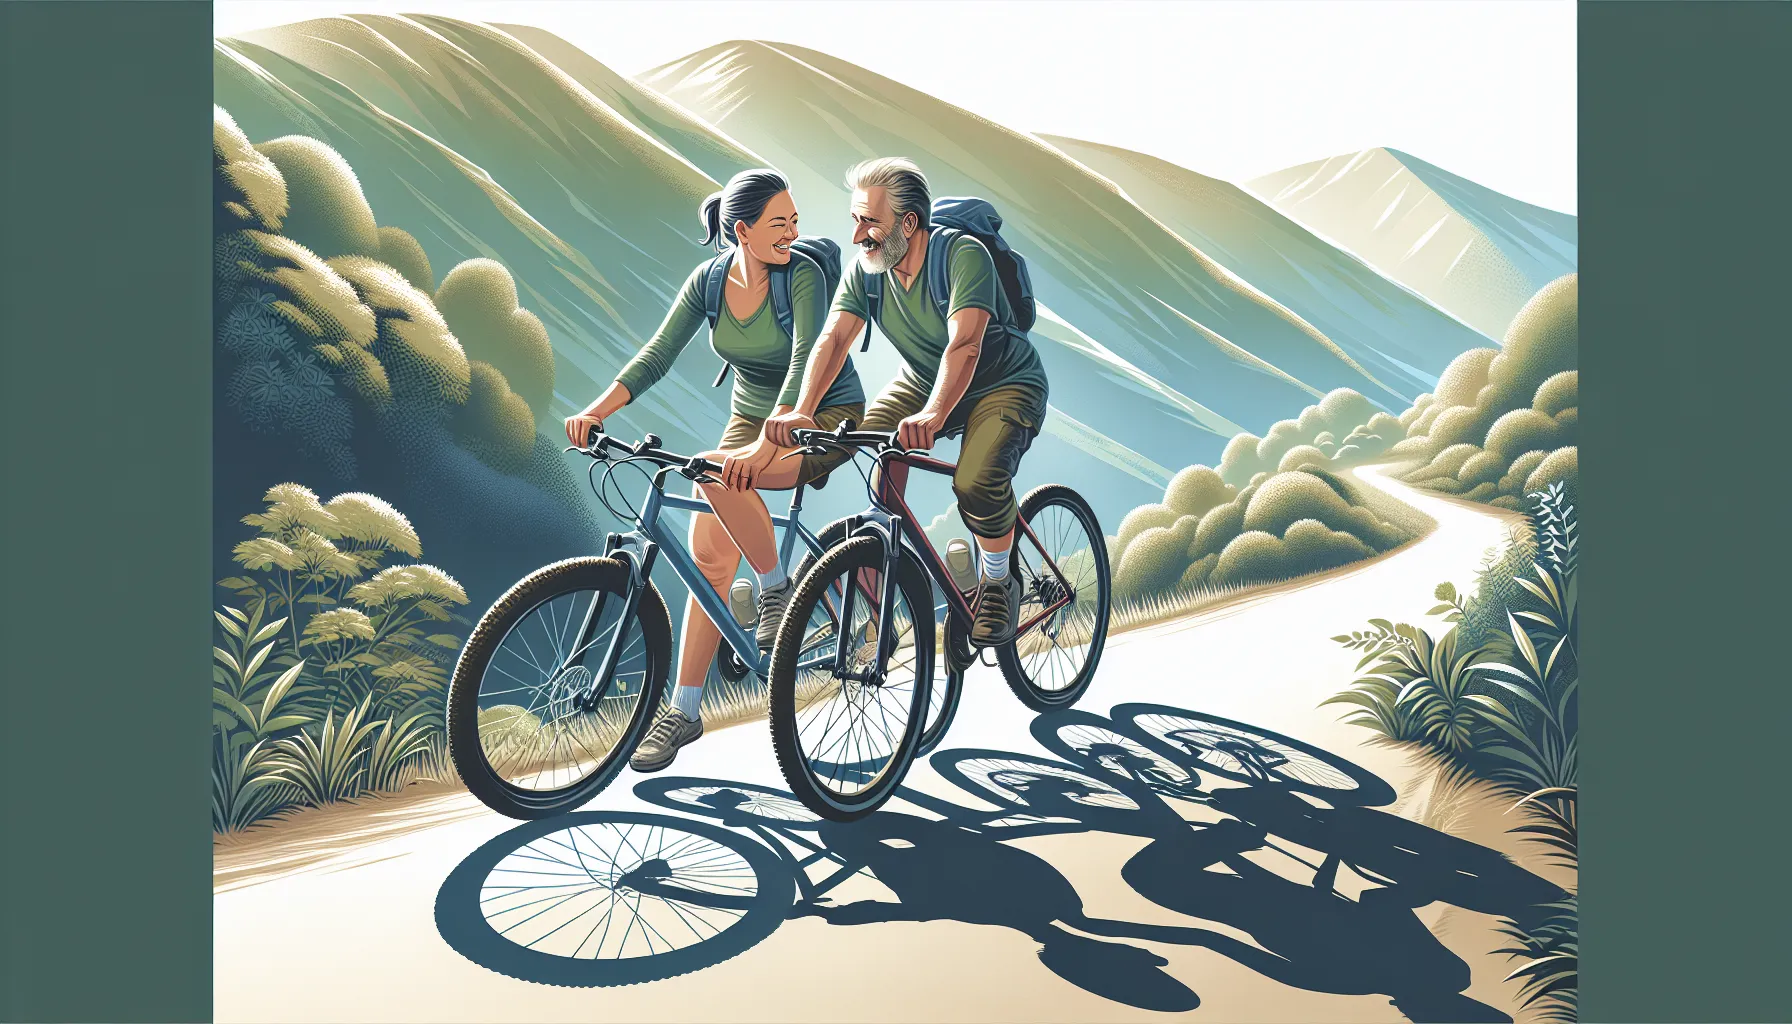 O ciclismo e a amizade são duas coisas que se complementam perfeitamente. Pedalar em grupo não só fortalece os laços entre os ciclistas, mas também cria amizades duradouras.

Os passeios de bicicleta são uma ótima maneira de conhecer pessoas com interesses semelhantes. Quando um grupo de ciclistas se reúne para pedalar, eles compartilham uma paixão em